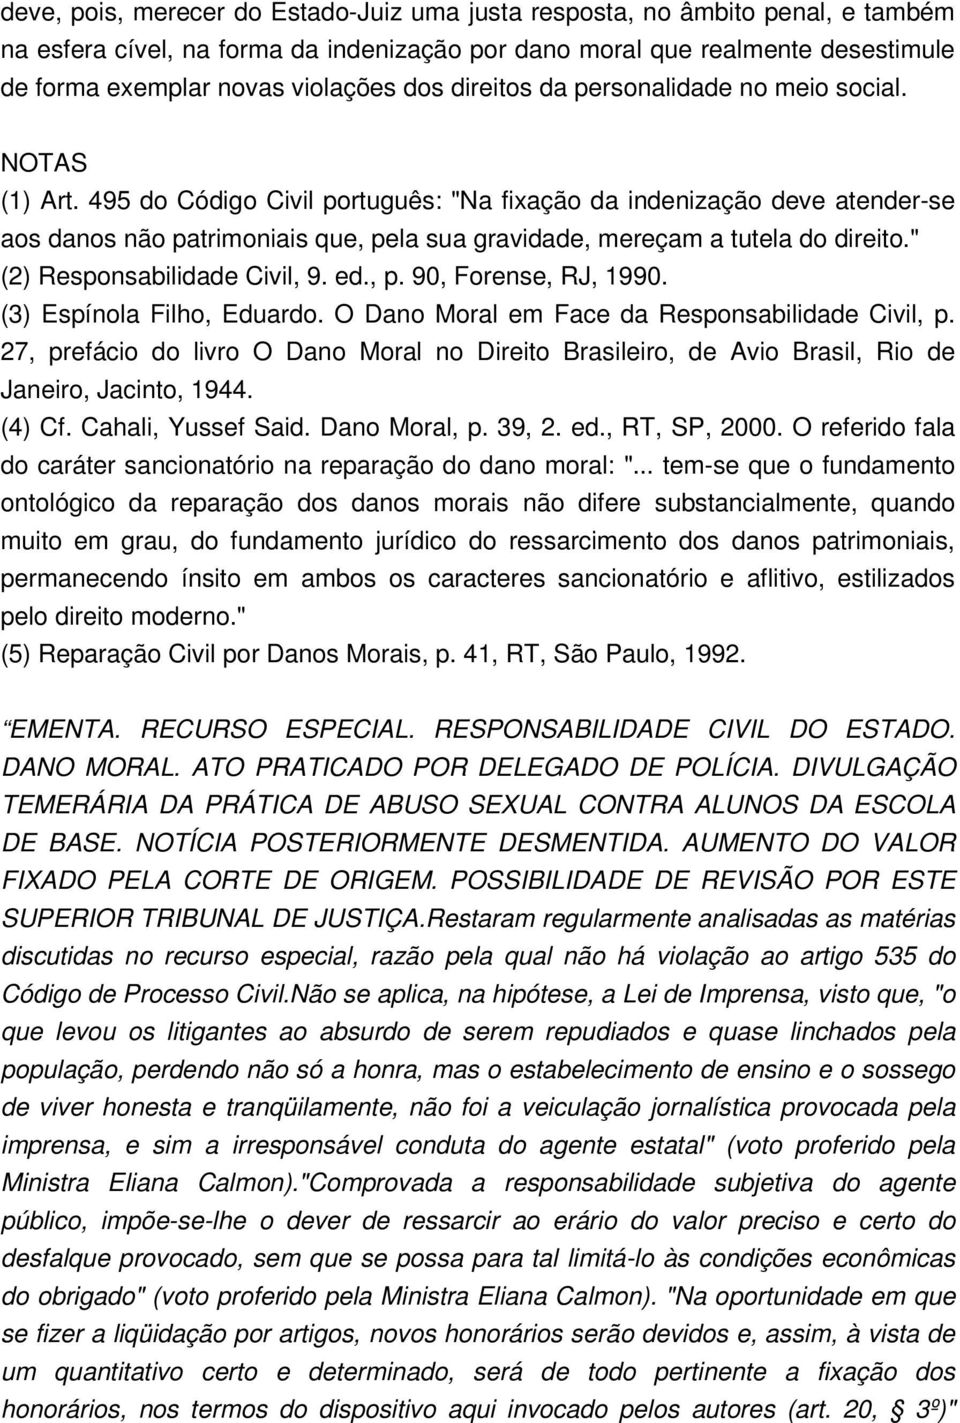 495 do Código Civil português: "Na fixação da indenização deve atender-se aos danos não patrimoniais que, pela sua gravidade, mereçam a tutela do direito." (2) Responsabilidade Civil, 9. ed., p. 90, Forense, RJ, 1990.